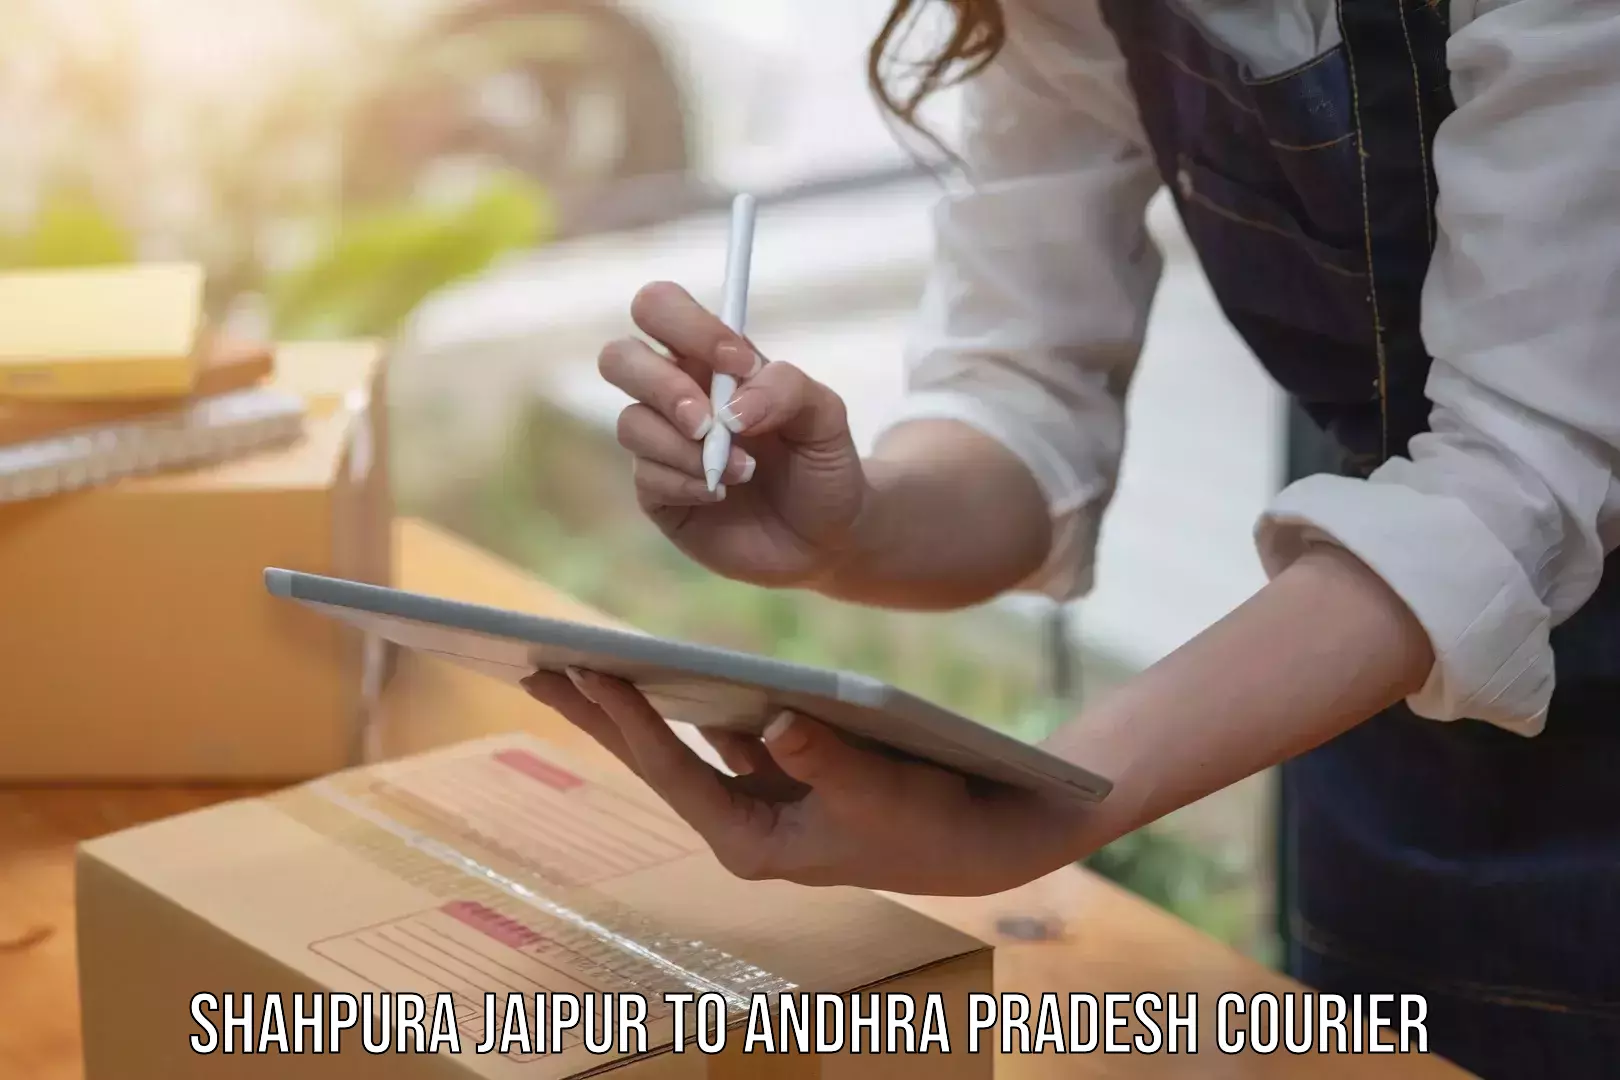 Digital courier platforms Shahpura Jaipur to Chimakurthy